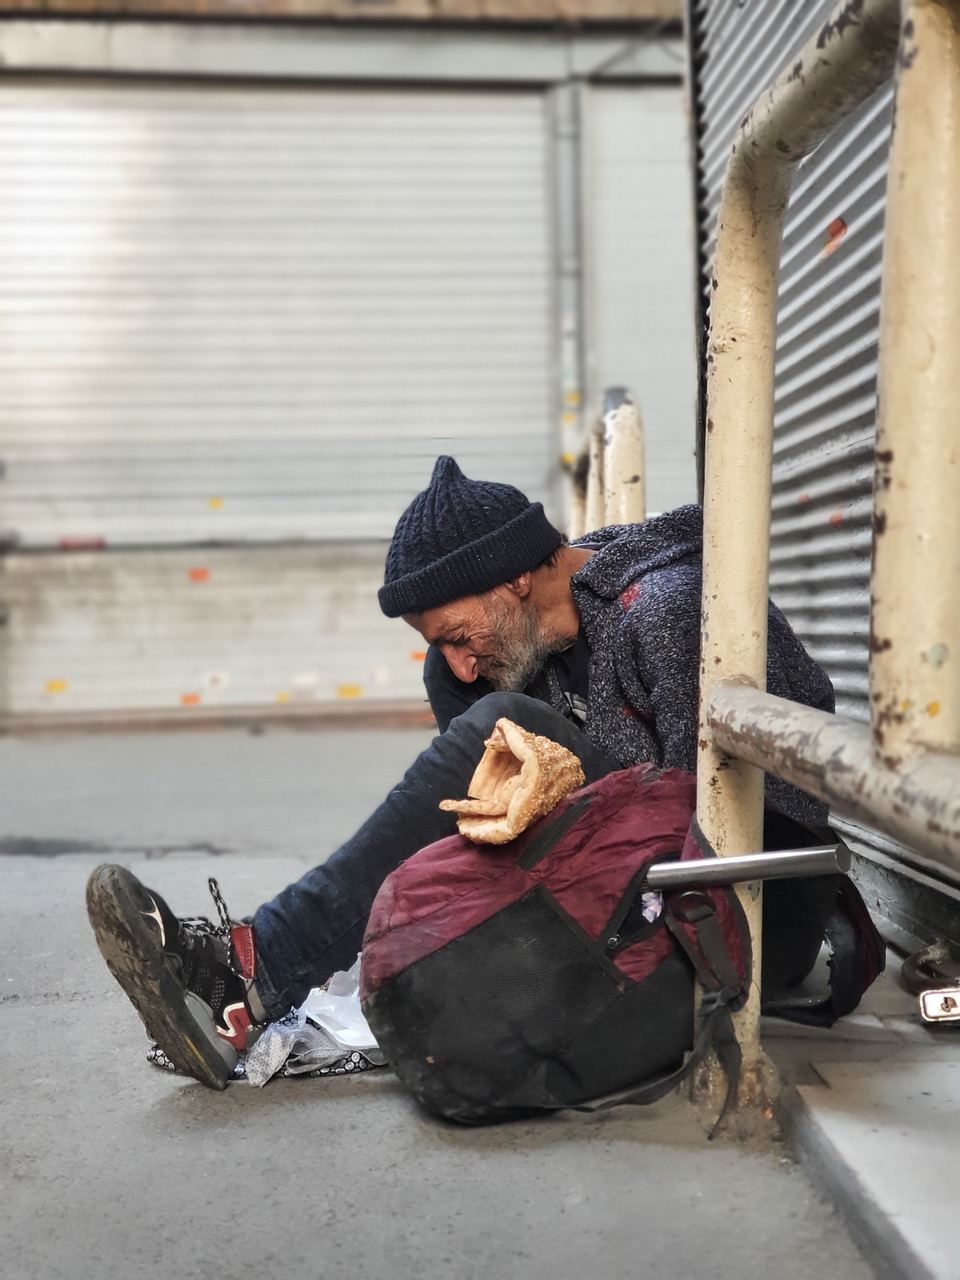 Ppersona sin hogar sentada en el suelo | Foto: Pixabay